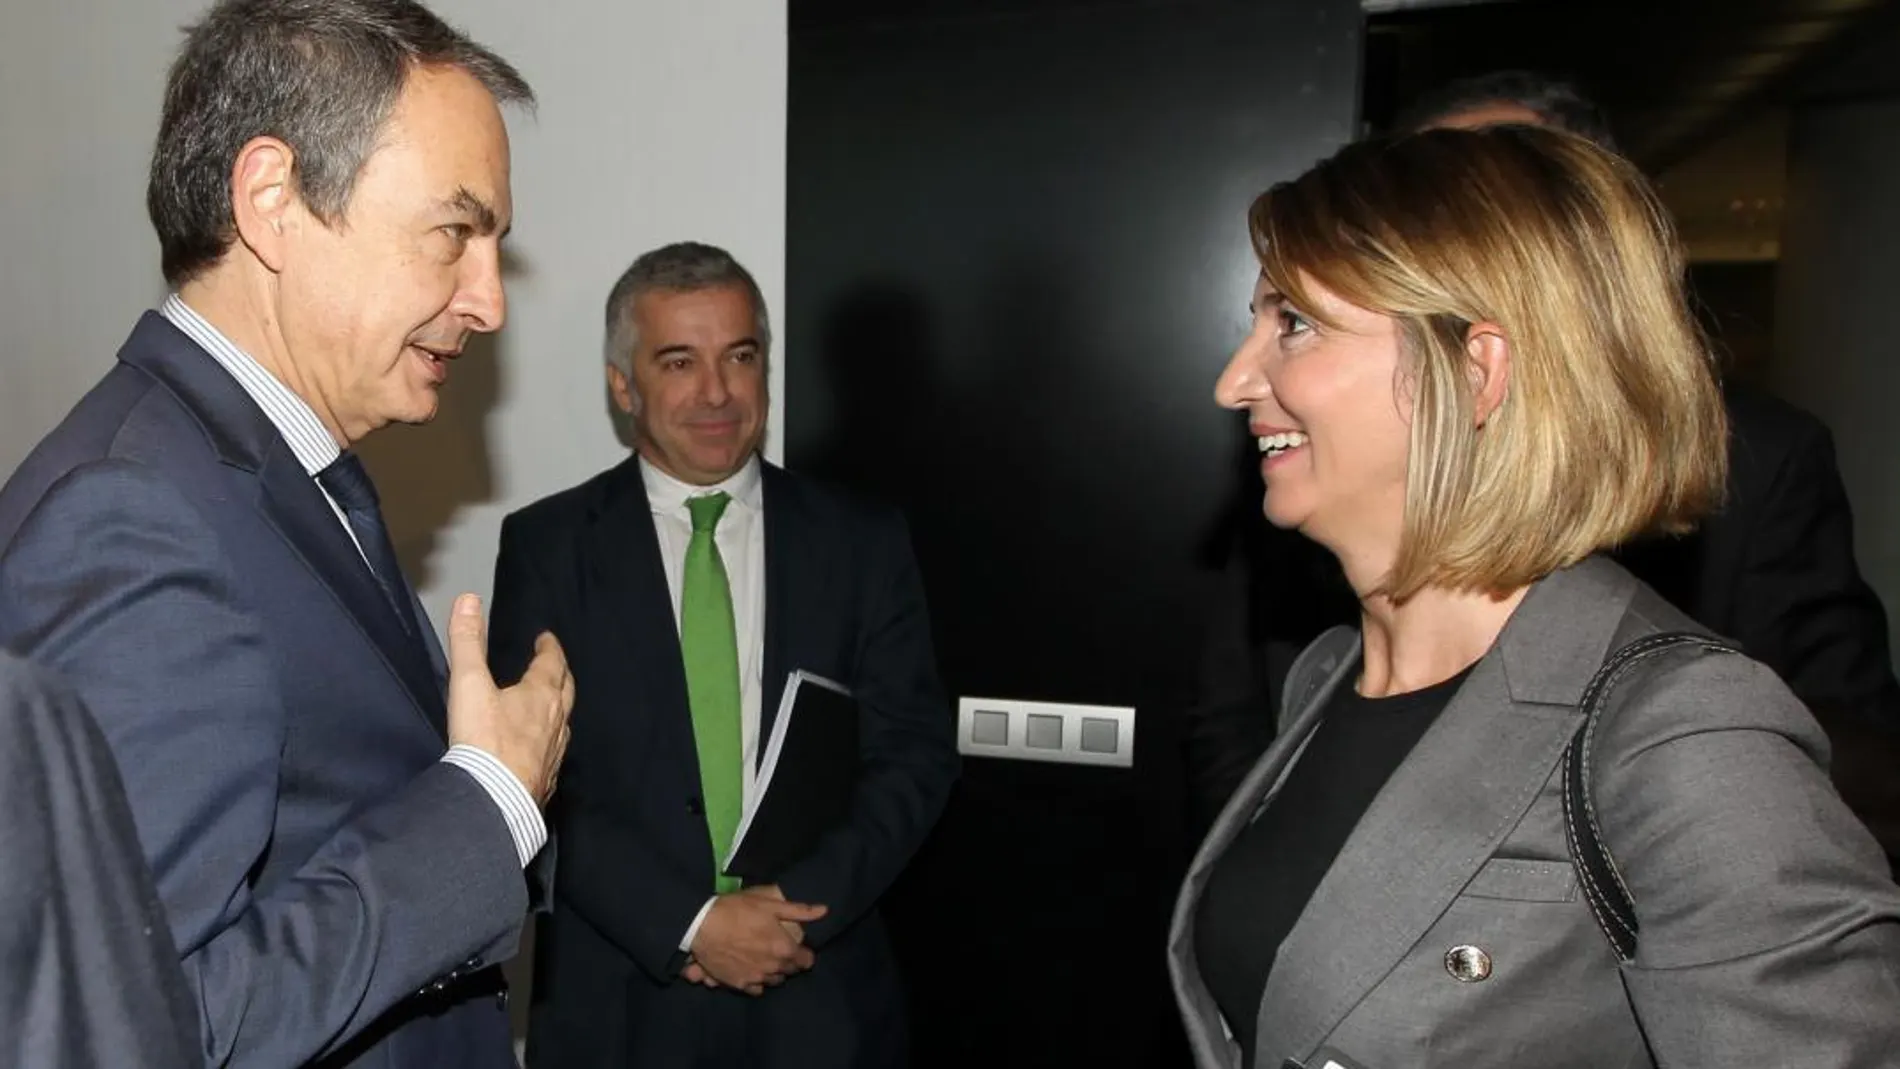 La consejera de Familia, Alicia García, conversa con el presidente del Foro, José Luis Rodríguez Zapatero